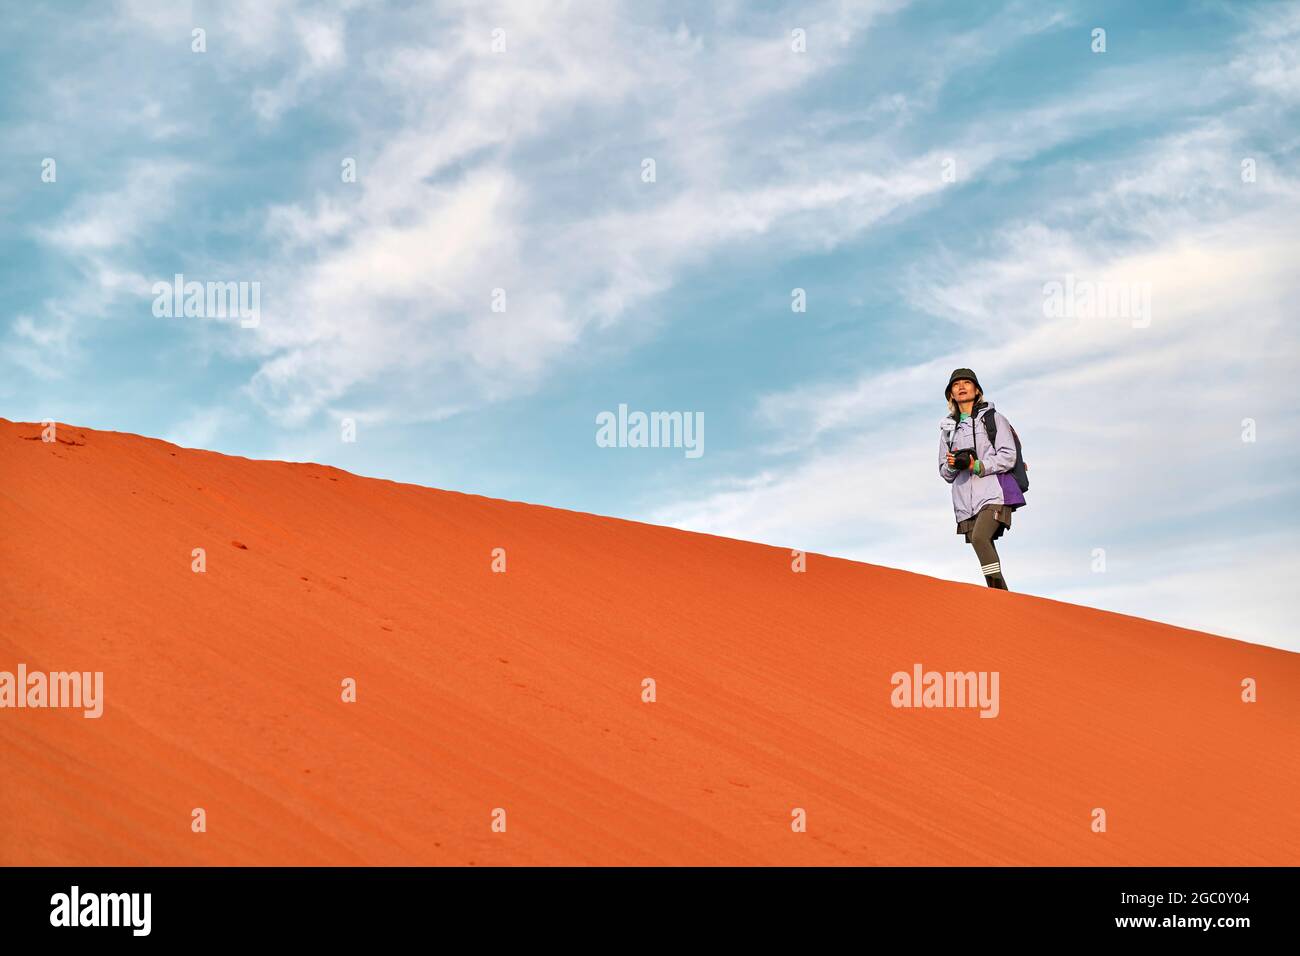 asiatische Fotografin, die auf dem Grat einer Sanddüne läuft und die Aussicht betrachtet Stockfoto